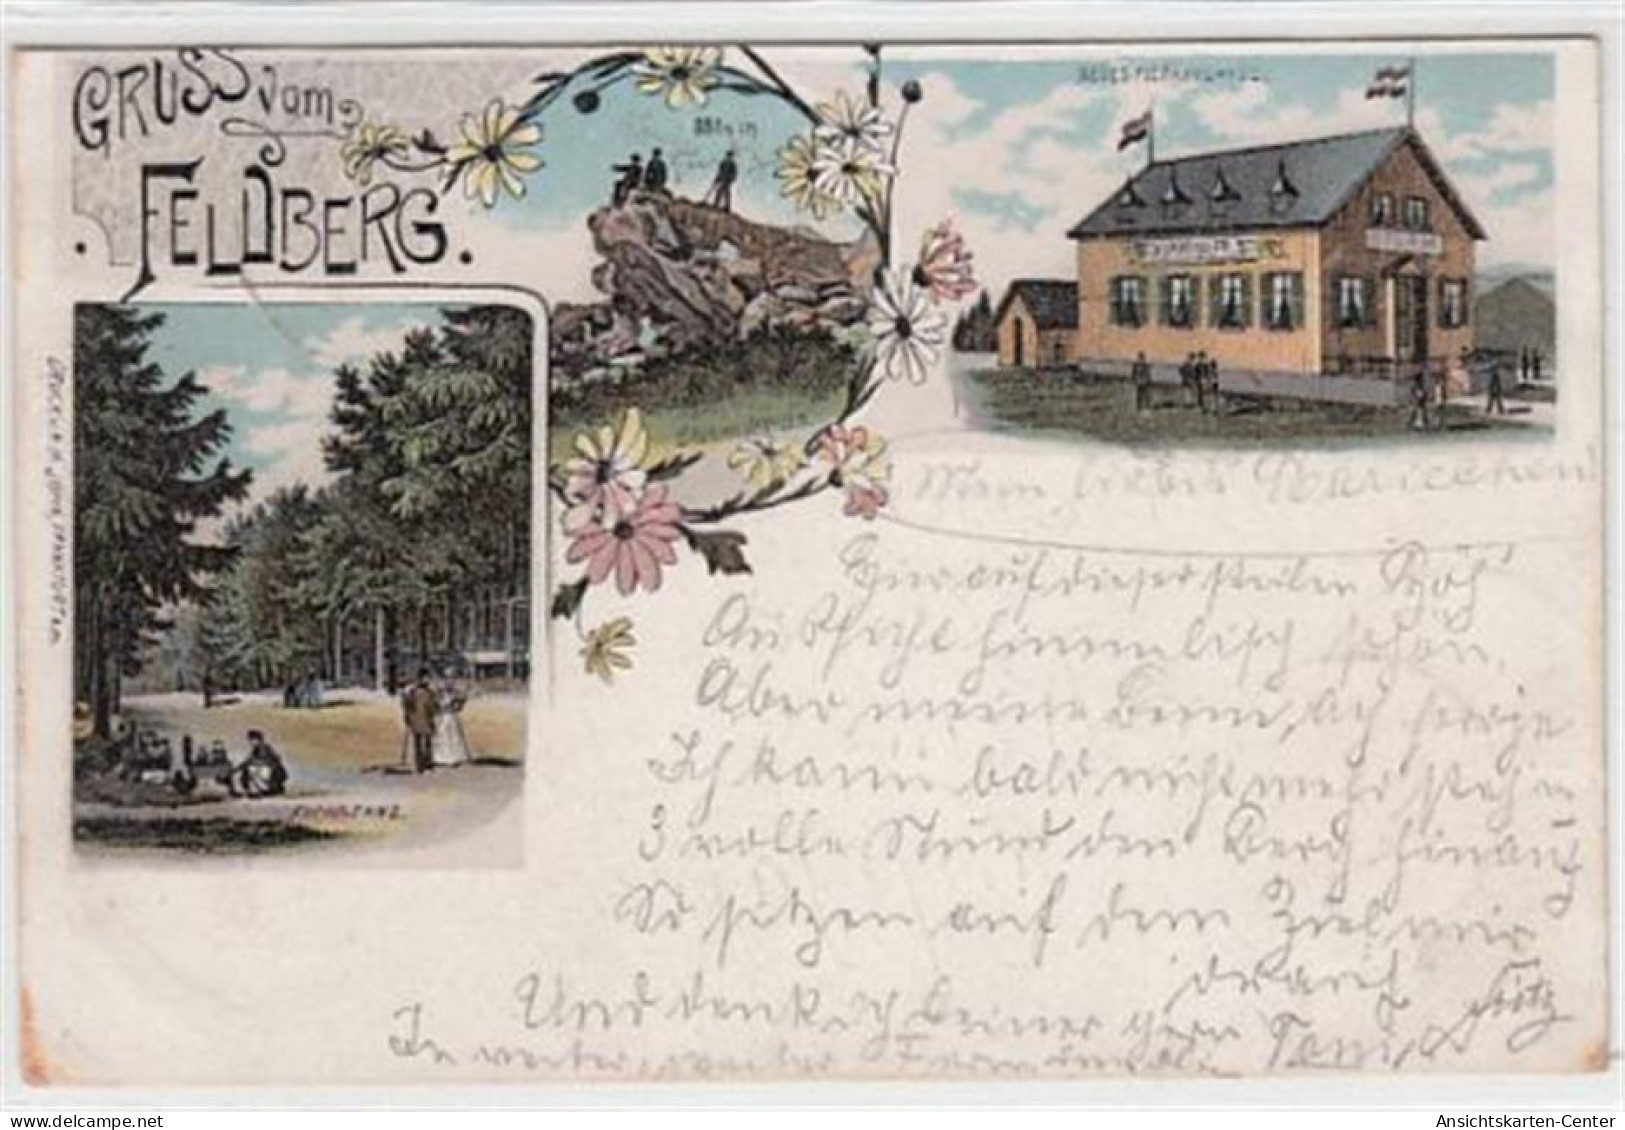 39095407 - Gruss Vom Feldberg, Lithographie Mit Restauration Gelaufen, 1896. Ecken Mit Albumabdruecken, Leichter Schrif - Oberursel